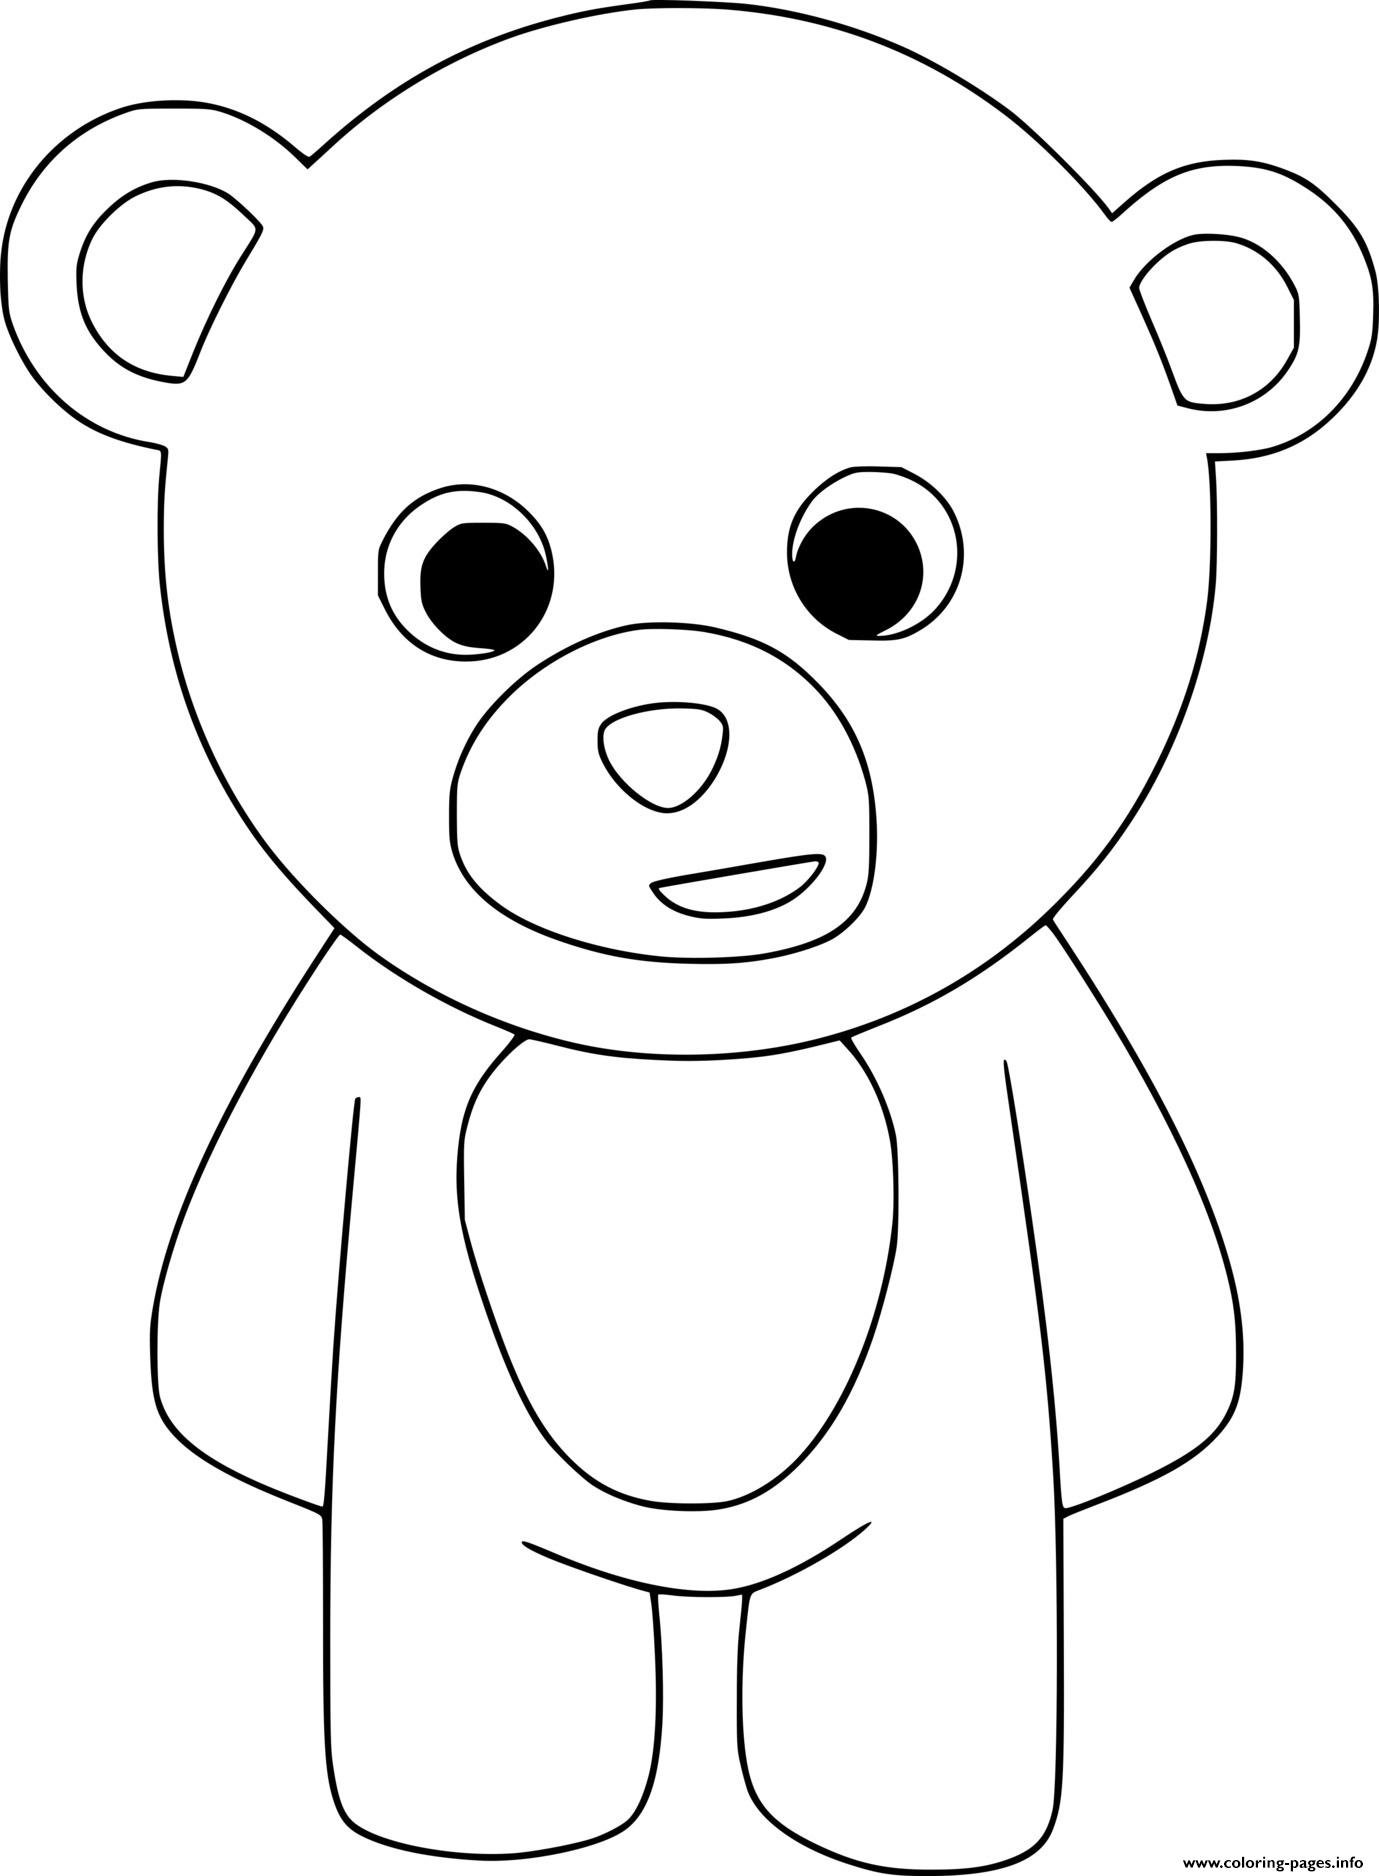 Раскраска медведь для детей 2 3 лет. Раскраска. Медвежонок. Мишка раскраска для малышей. Медведь раскраска для детей. Медвежонок раскраска для детей.